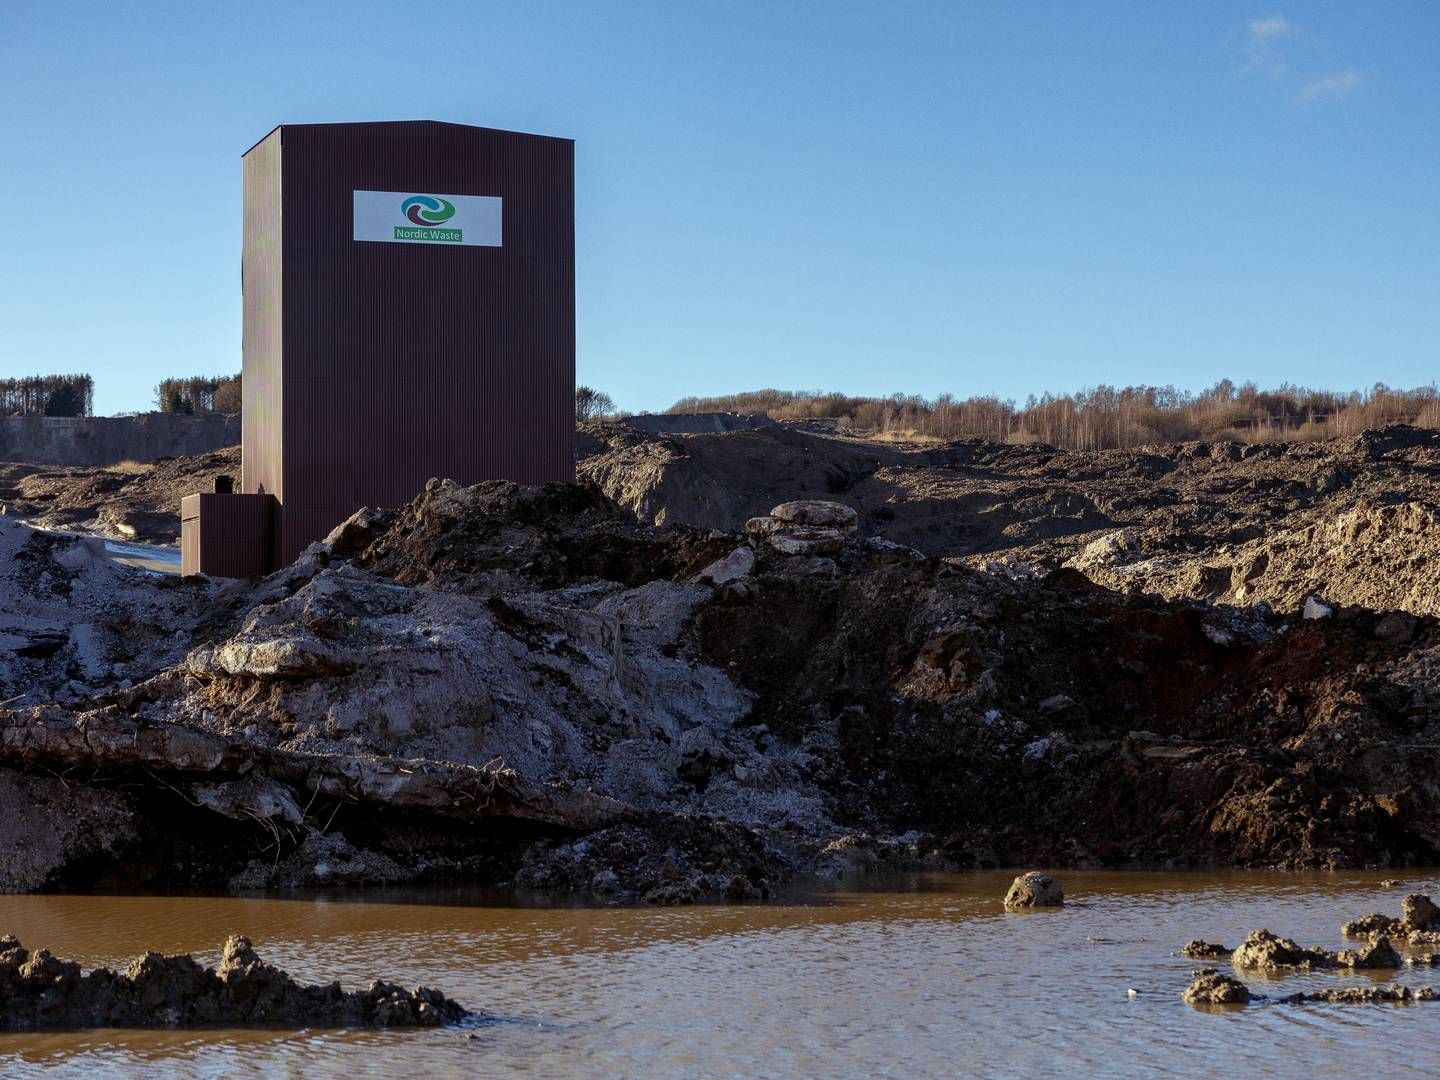 Nordic Wastes famøse jordvaskeanlæg er solgt midt i rekonstruktion af søsterselskabet DSH Recycling. | Foto: Benny Kjølhede